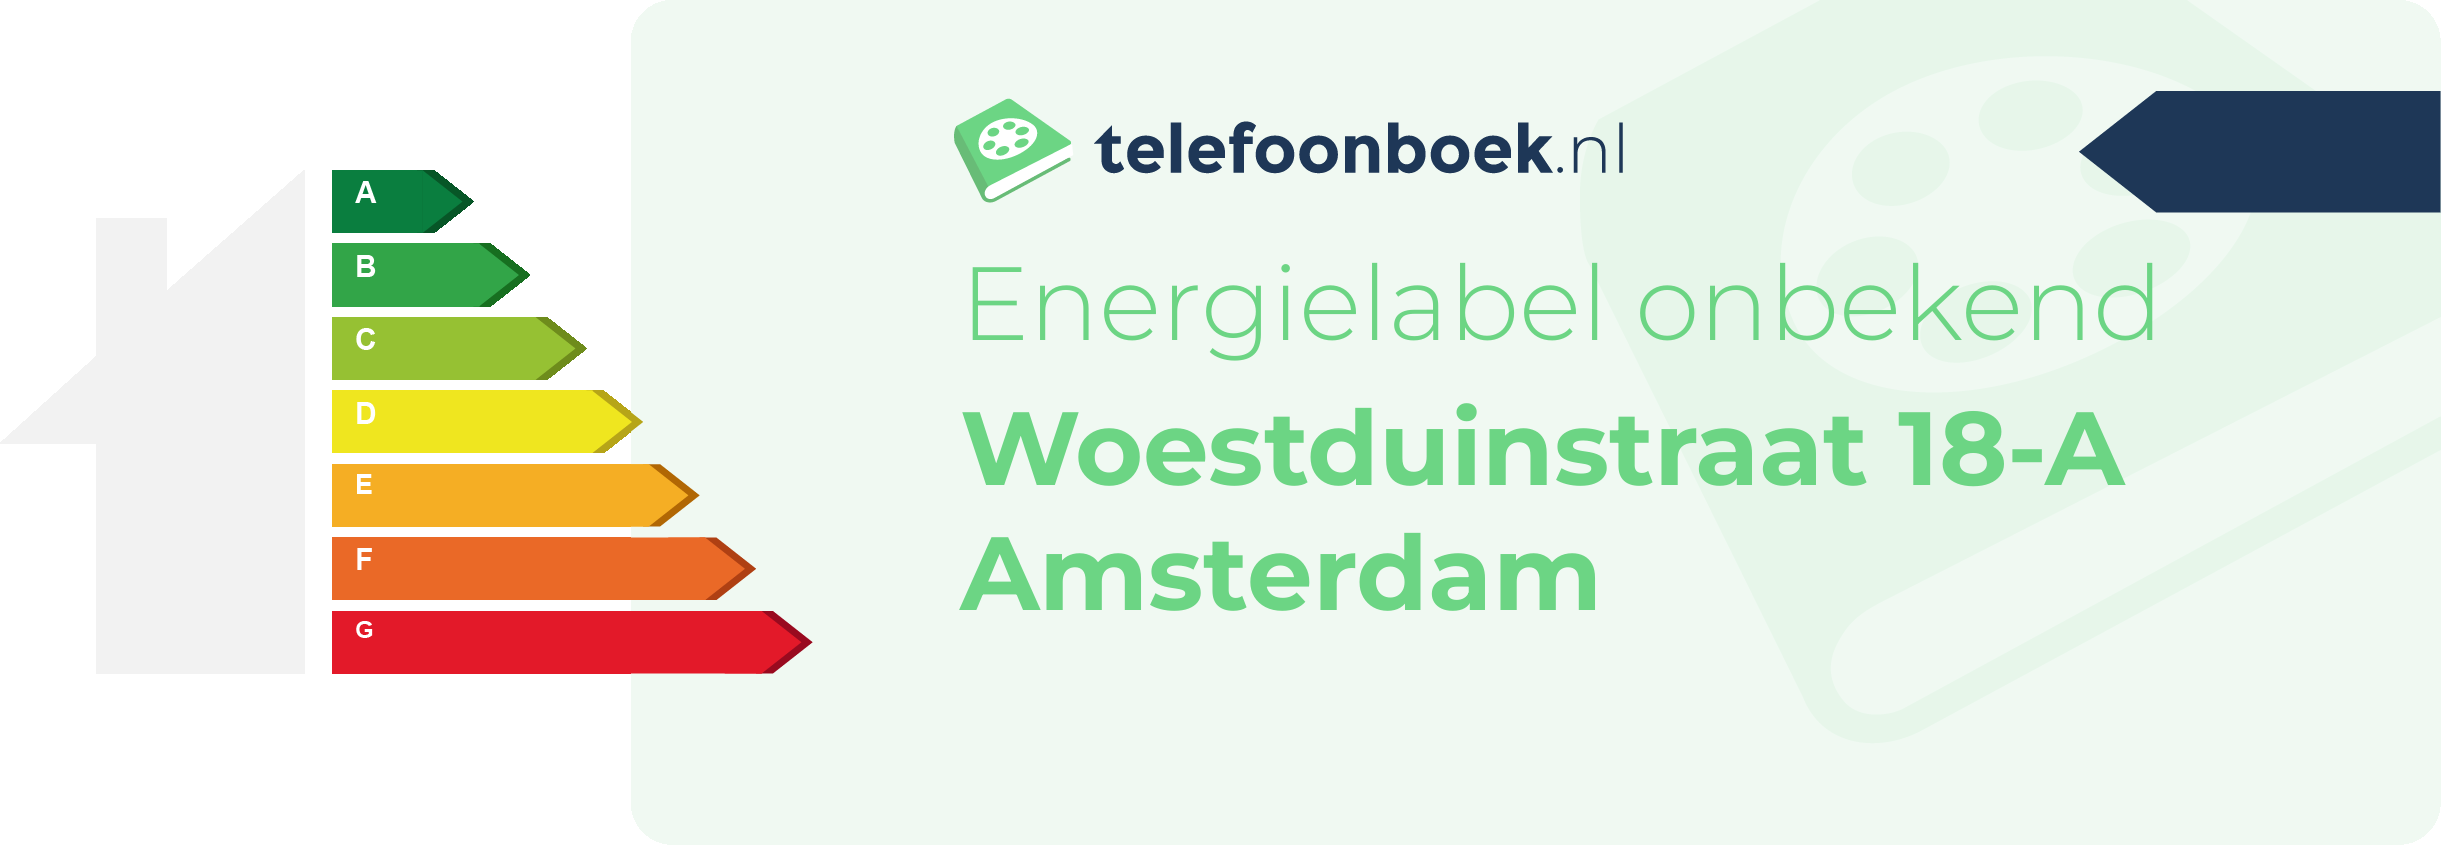 Energielabel Woestduinstraat 18-A Amsterdam